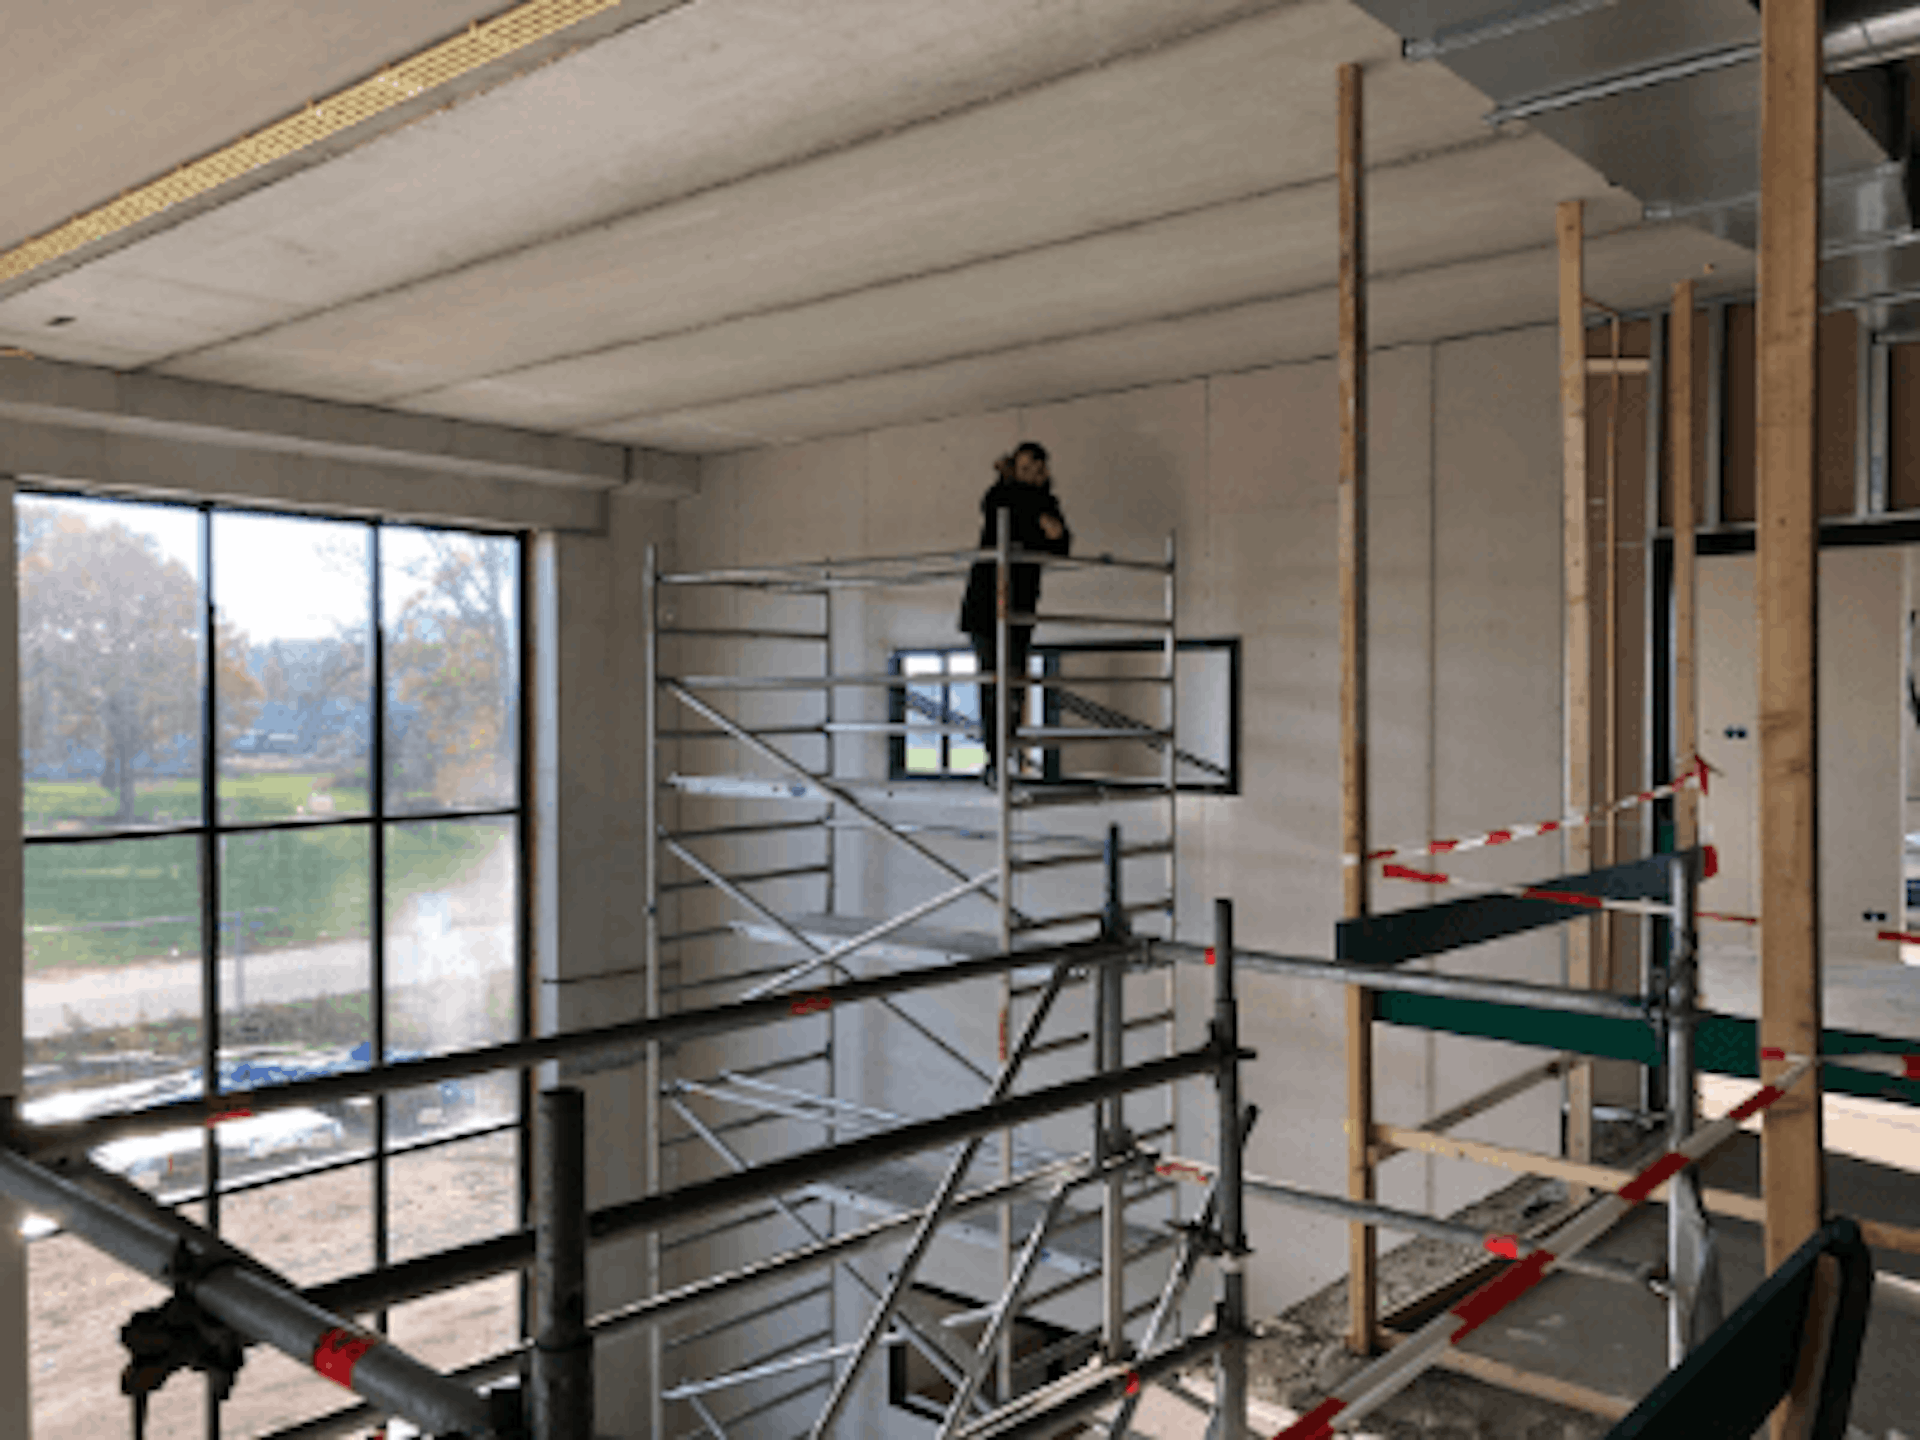 New Van Raam building in Varsseveld - Calendar week 47 (November 2018)